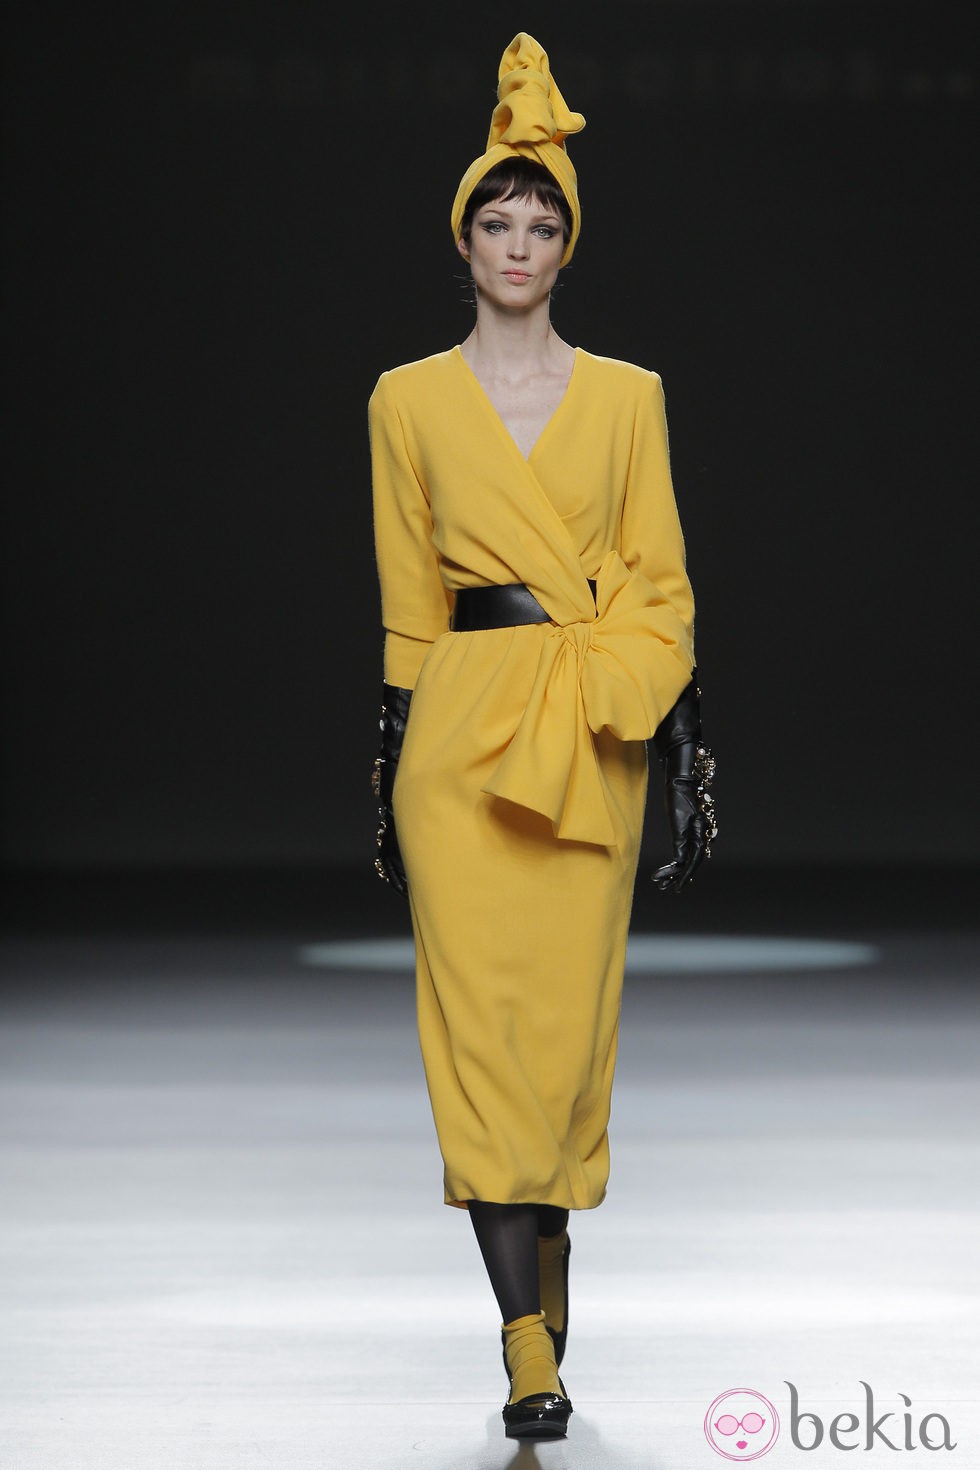 Vestido amarillo de la colección otoño/invierno 2013/2014 de María Barros en Madrid Fashion Week